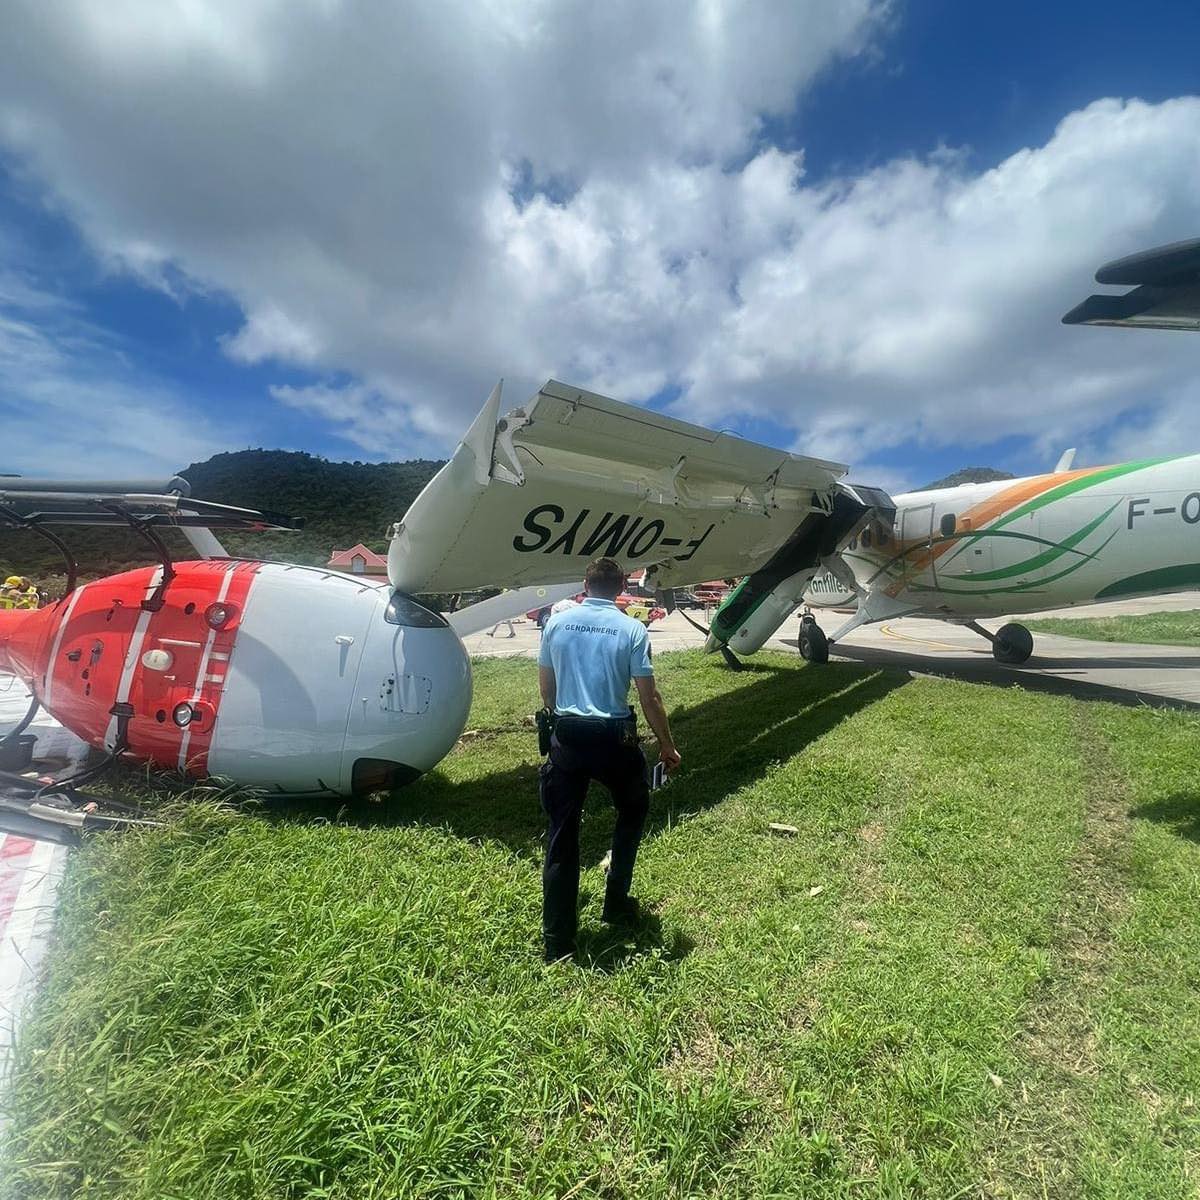     Un avion d’Air Antilles percute un hélicoptère à l’atterrissage à Saint-Barthélémy

